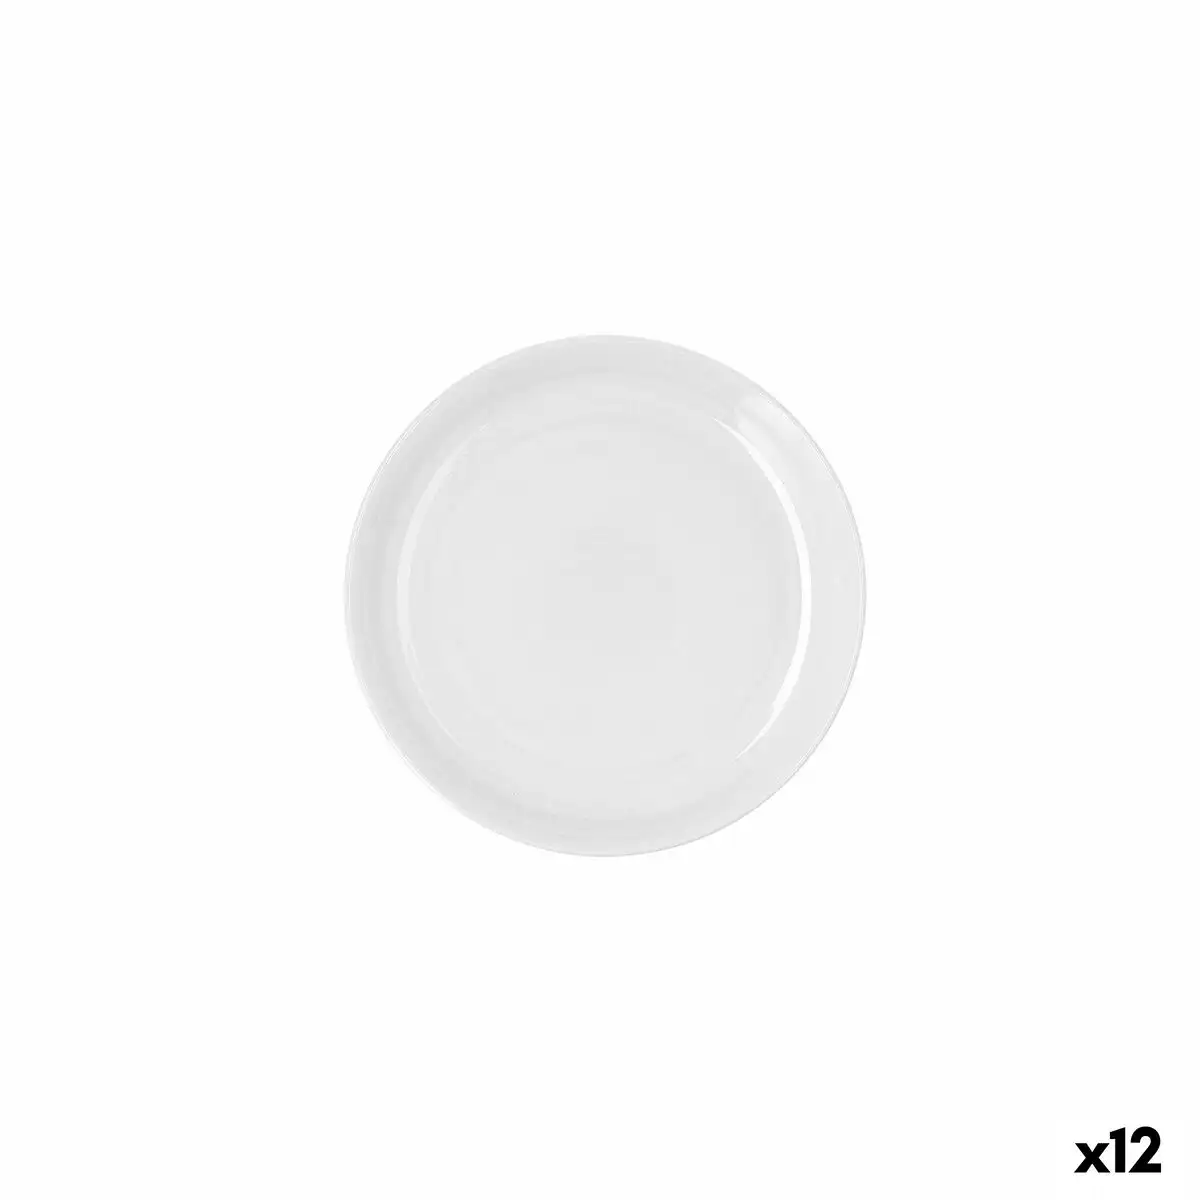 Assiette plate ariane artisan ceramique blanc o 21 cm 12 unites _6380. DIAYTAR SENEGAL - Votre Portail Vers l'Exclusivité. Explorez notre boutique en ligne pour trouver des produits uniques et exclusifs, conçus pour les amateurs de qualité.